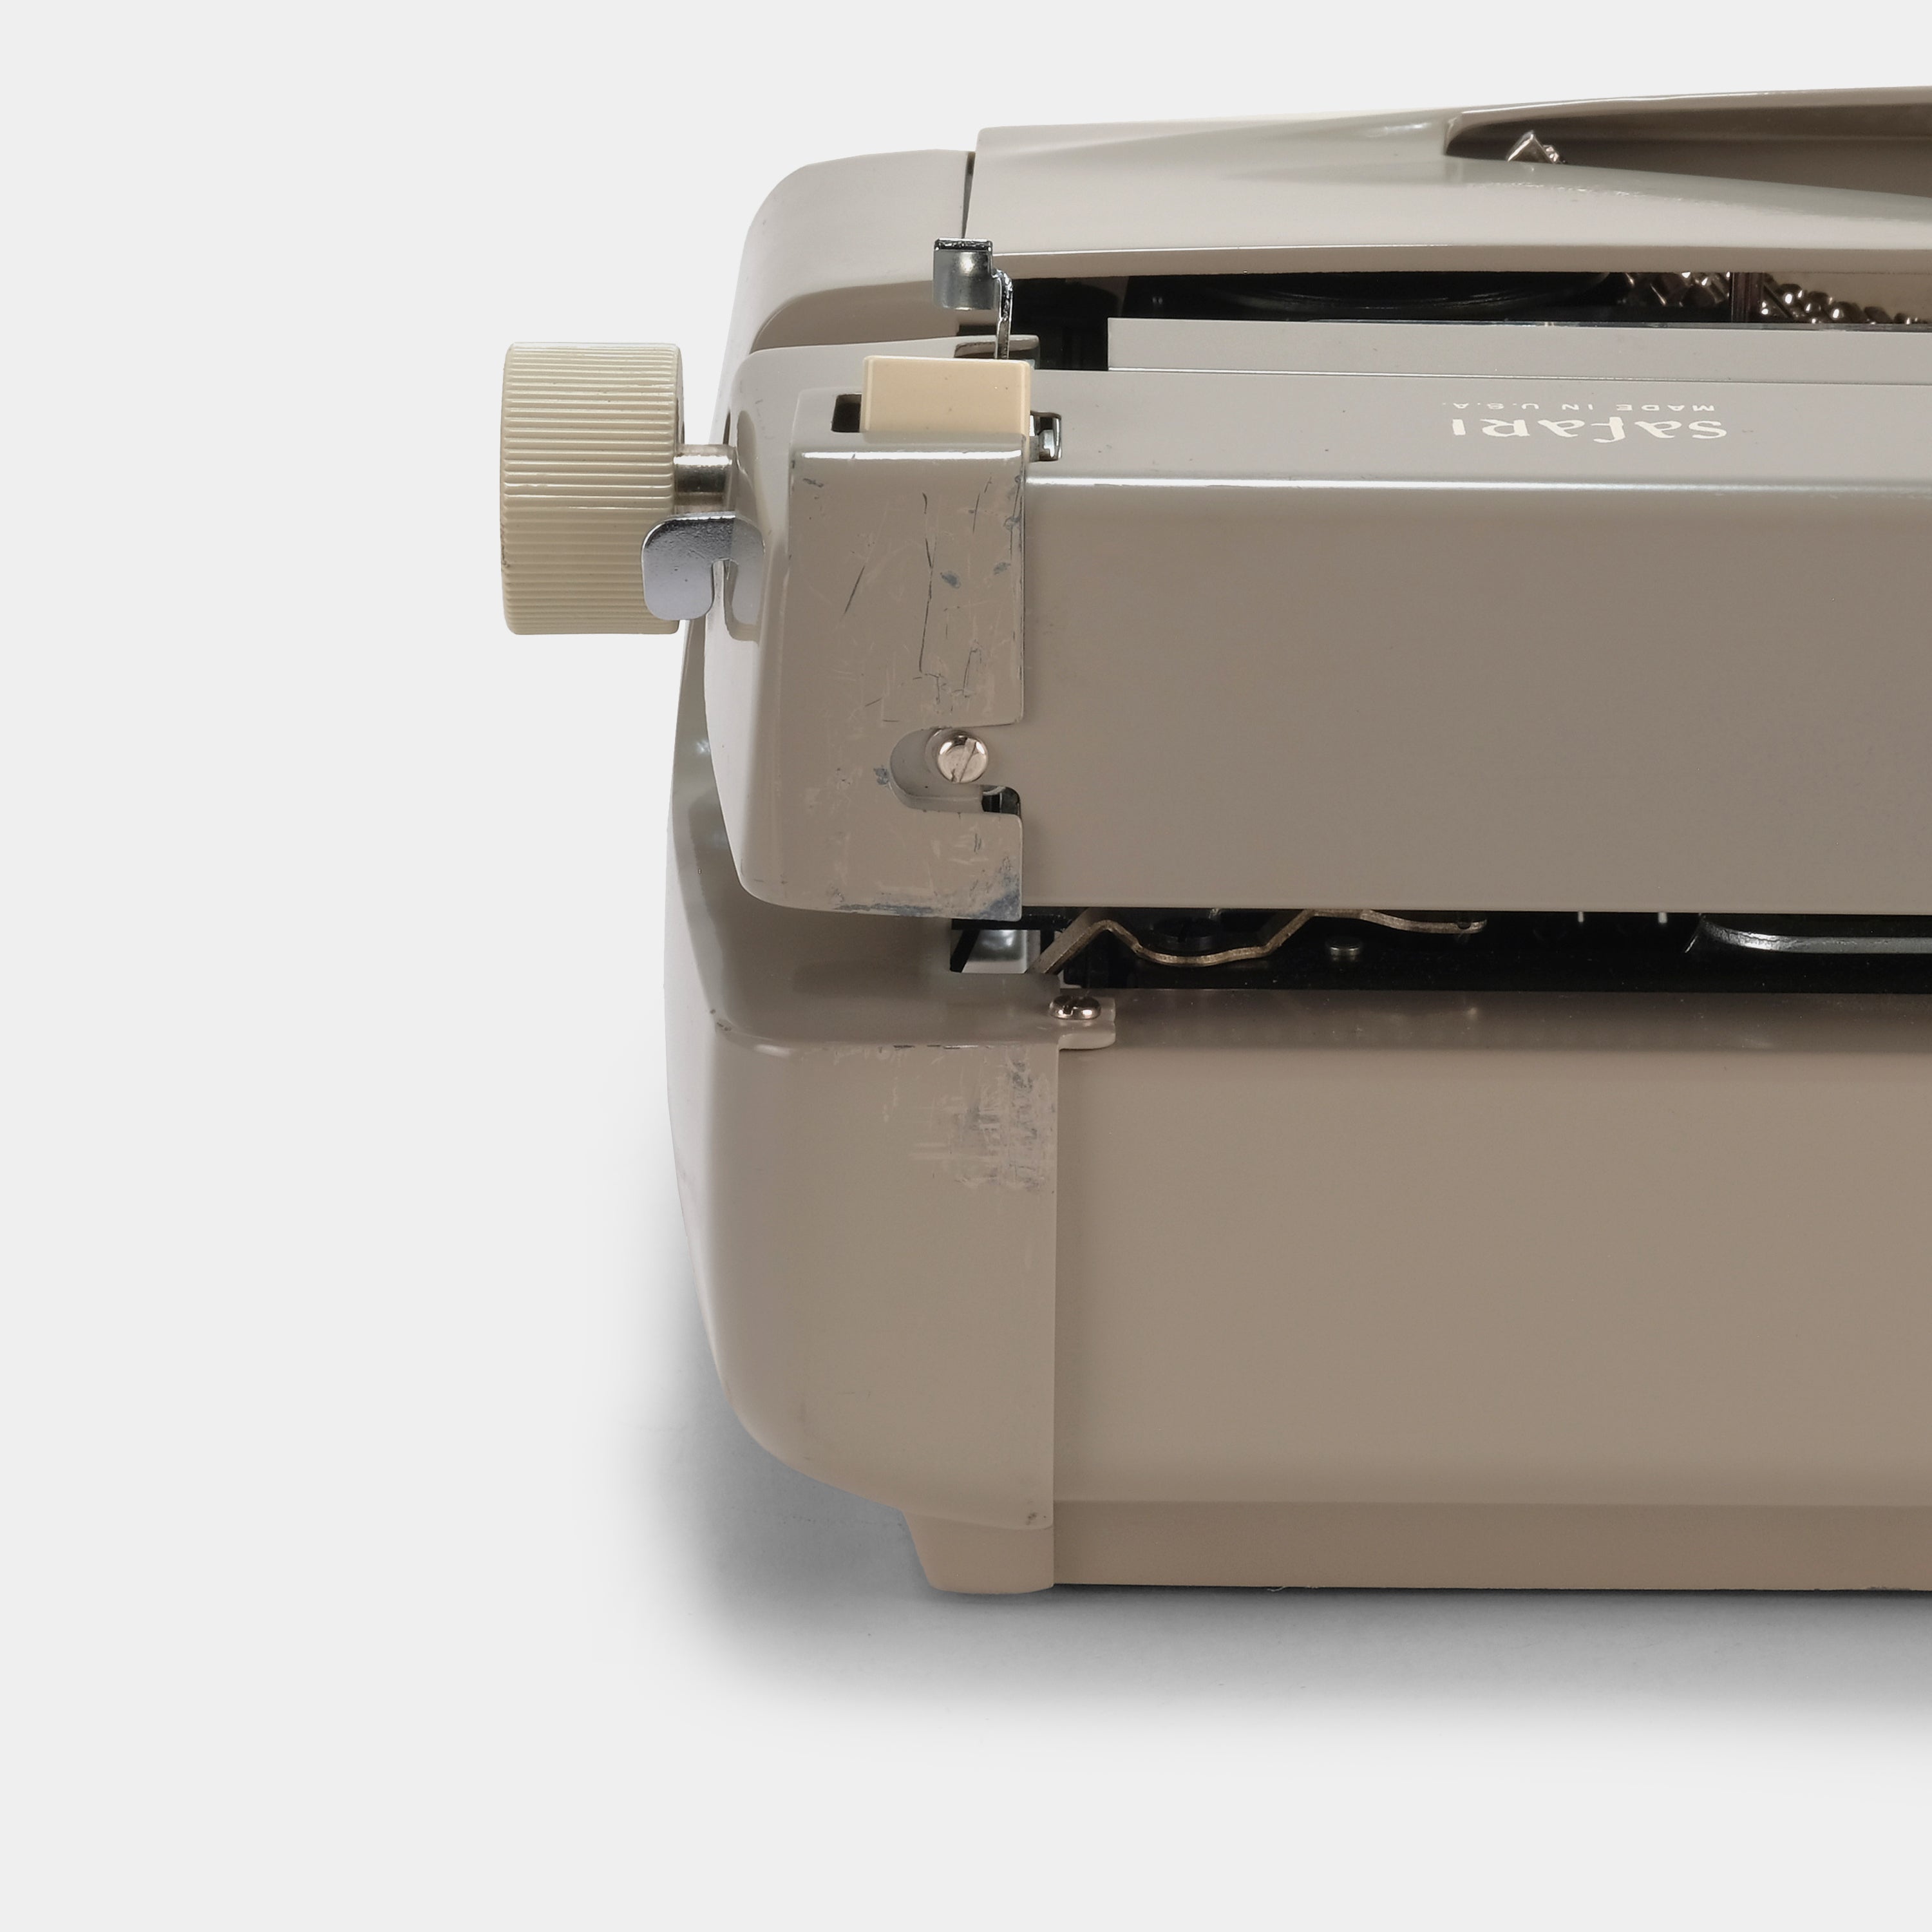 Royal Safari Tan Manual Typewriter and Case